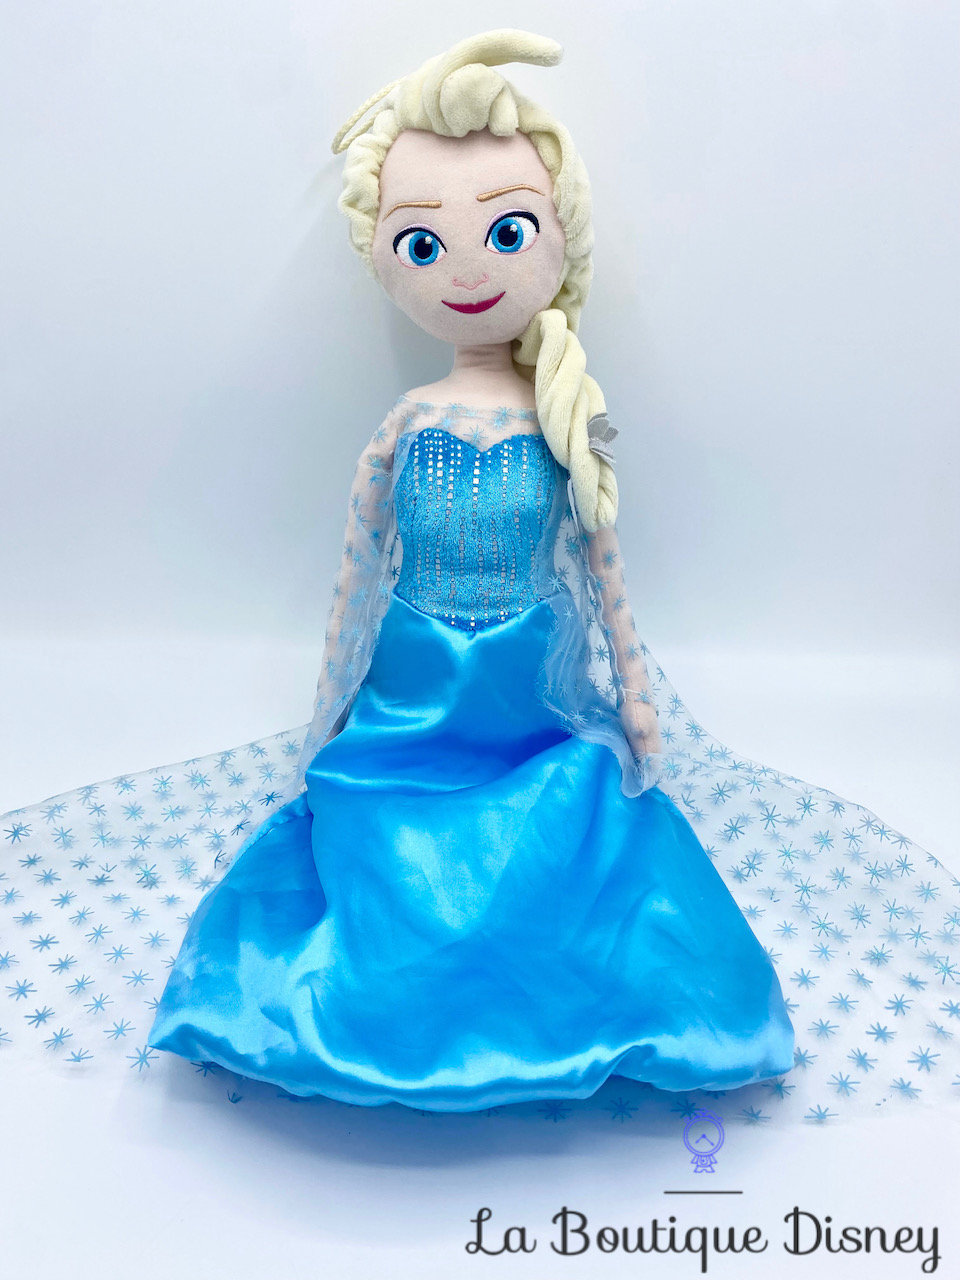 Range Pyjama Elsa La reine des neiges Disney Frozen Jemini Poupée chiffon peluche 53 cm